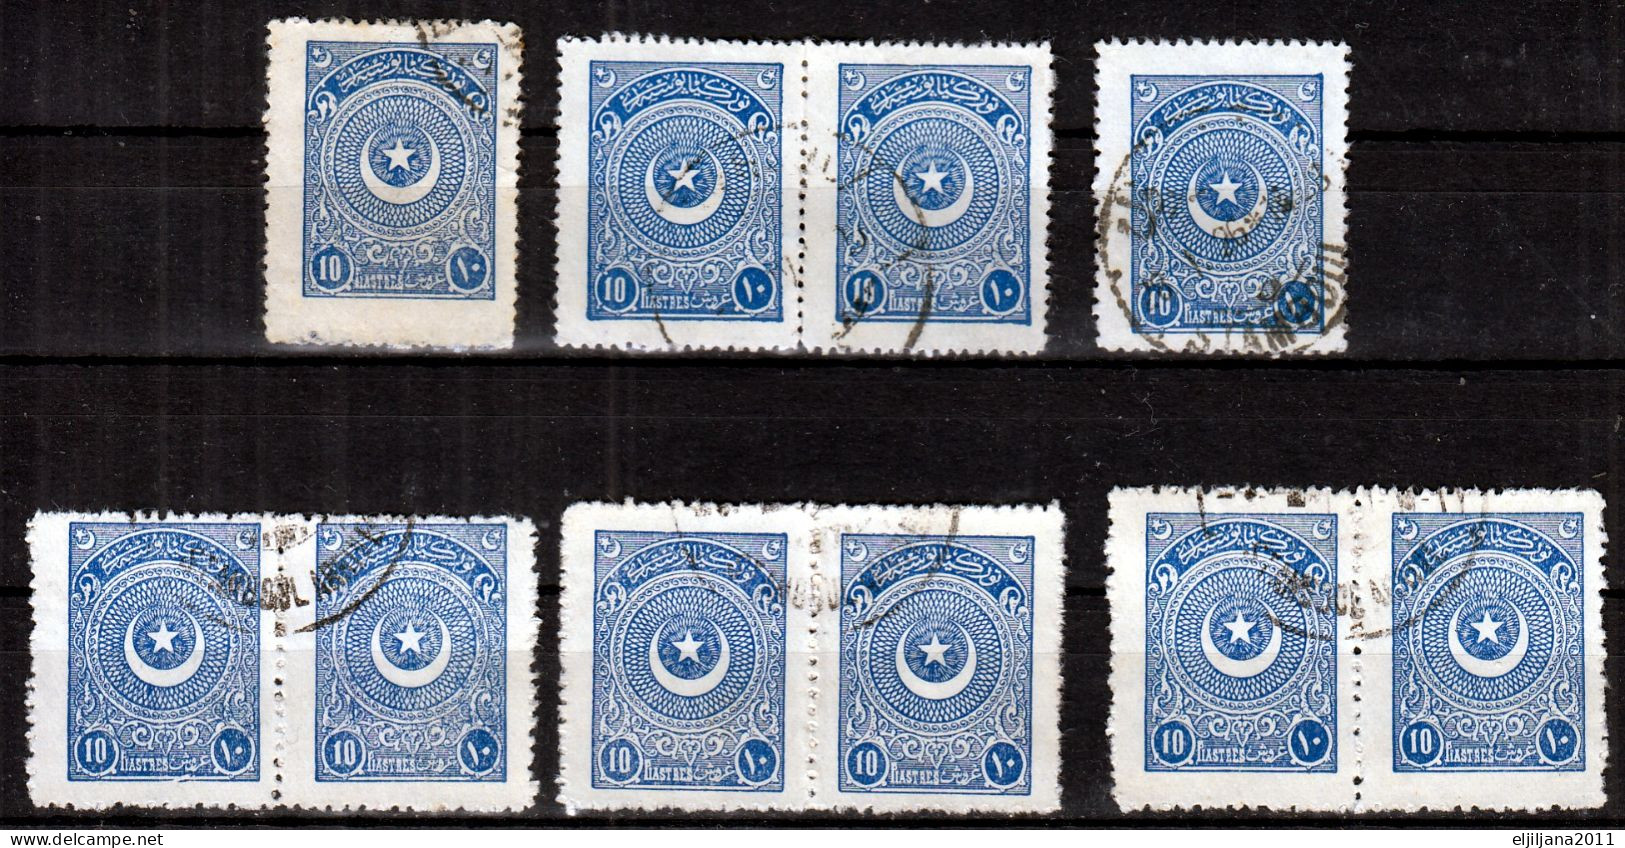 Turkey / Türkei 1923 - 1924 ⁕ Star & Crescent 10 Pia. Mi.817, 834, 842 ⁕ 34v used - different perf. ( 13 ¼, 10¾, 12... )